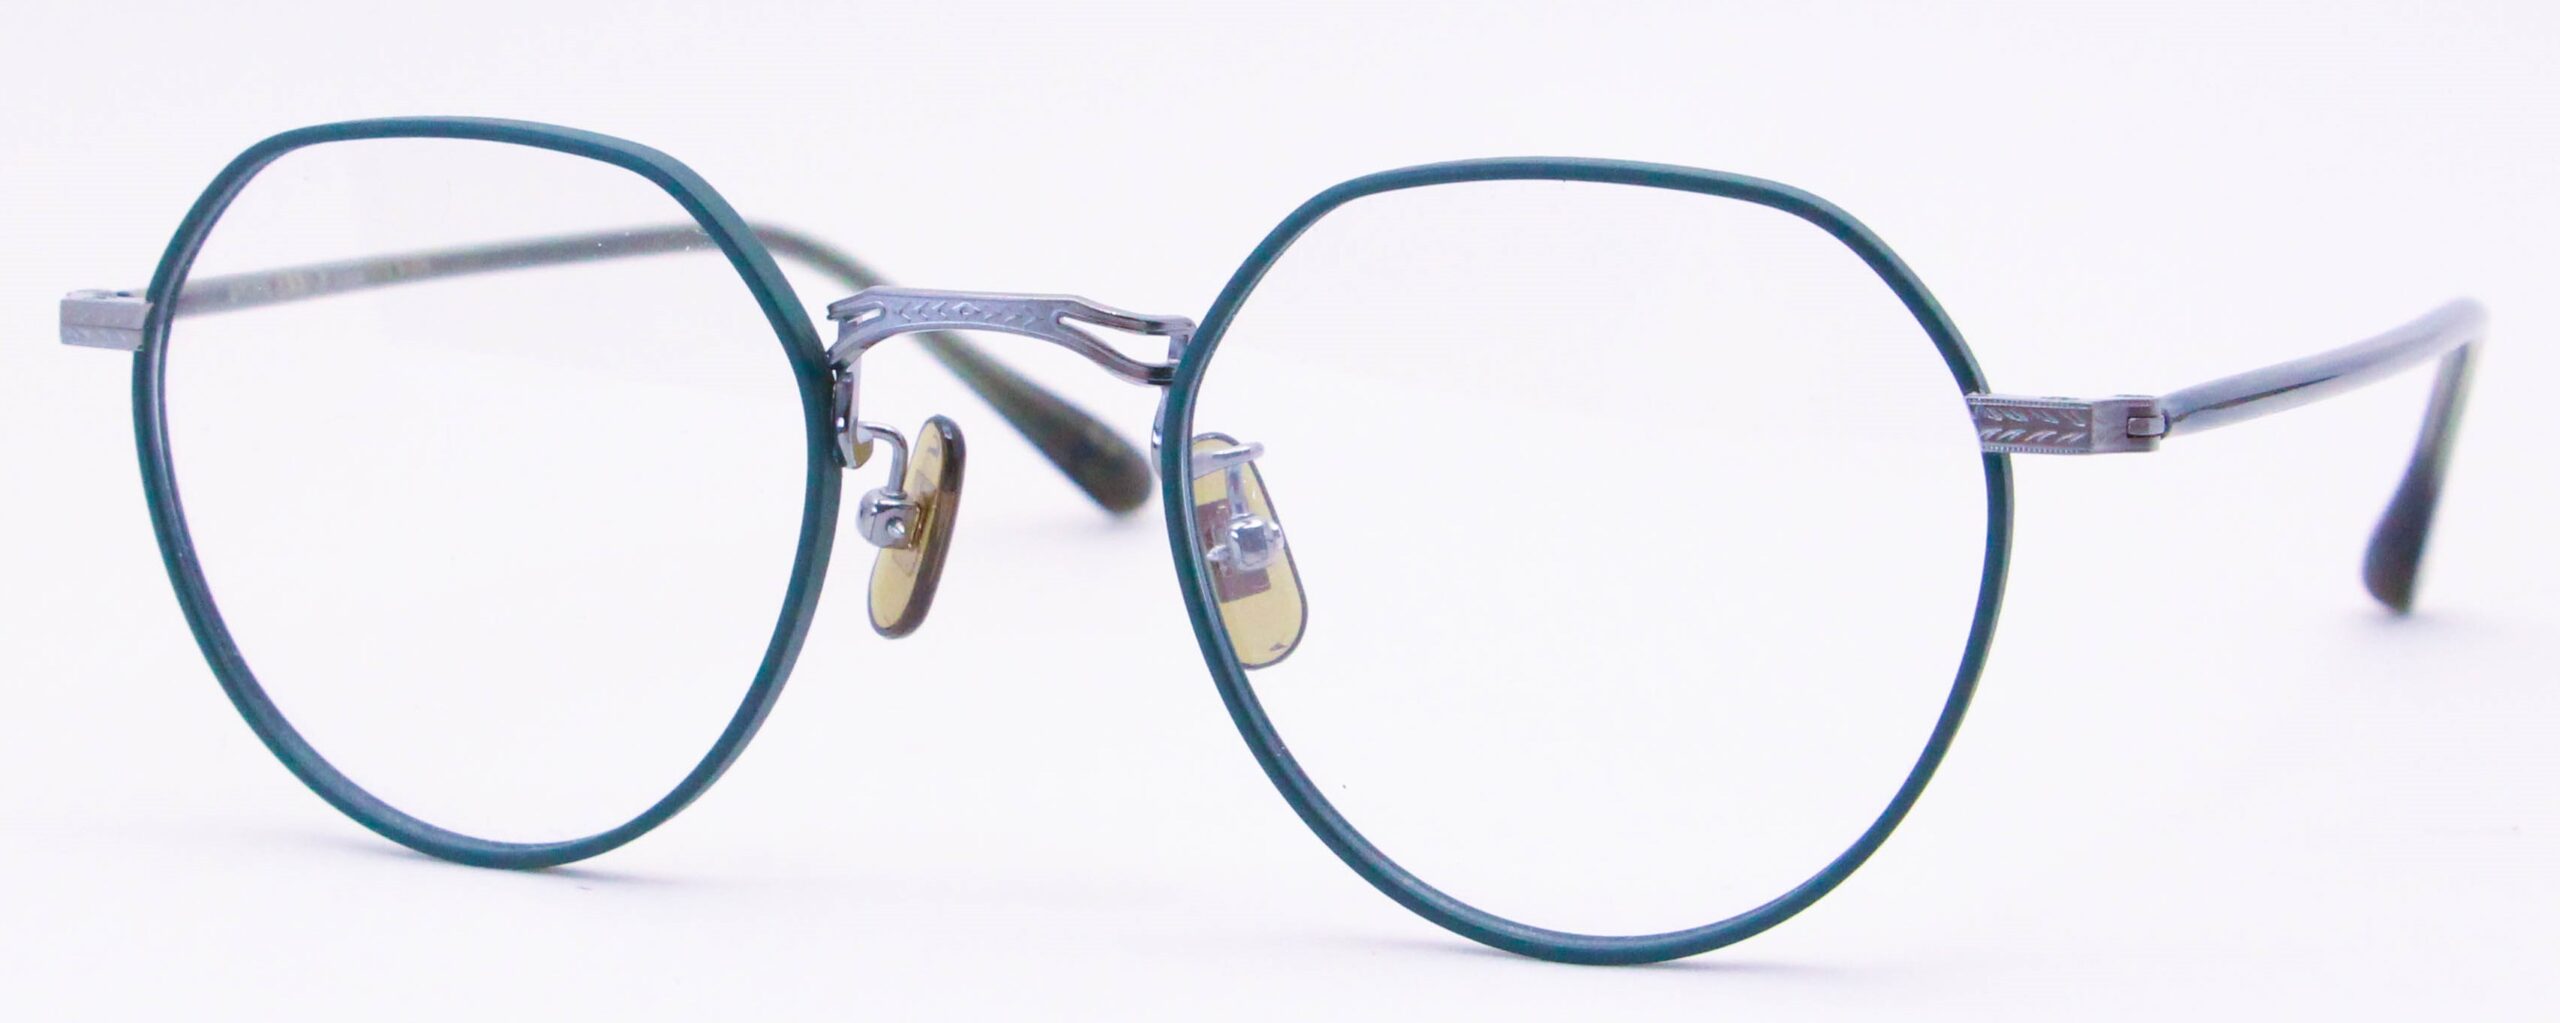 眼鏡のカラータイプC-5 Green-Matt/Gray